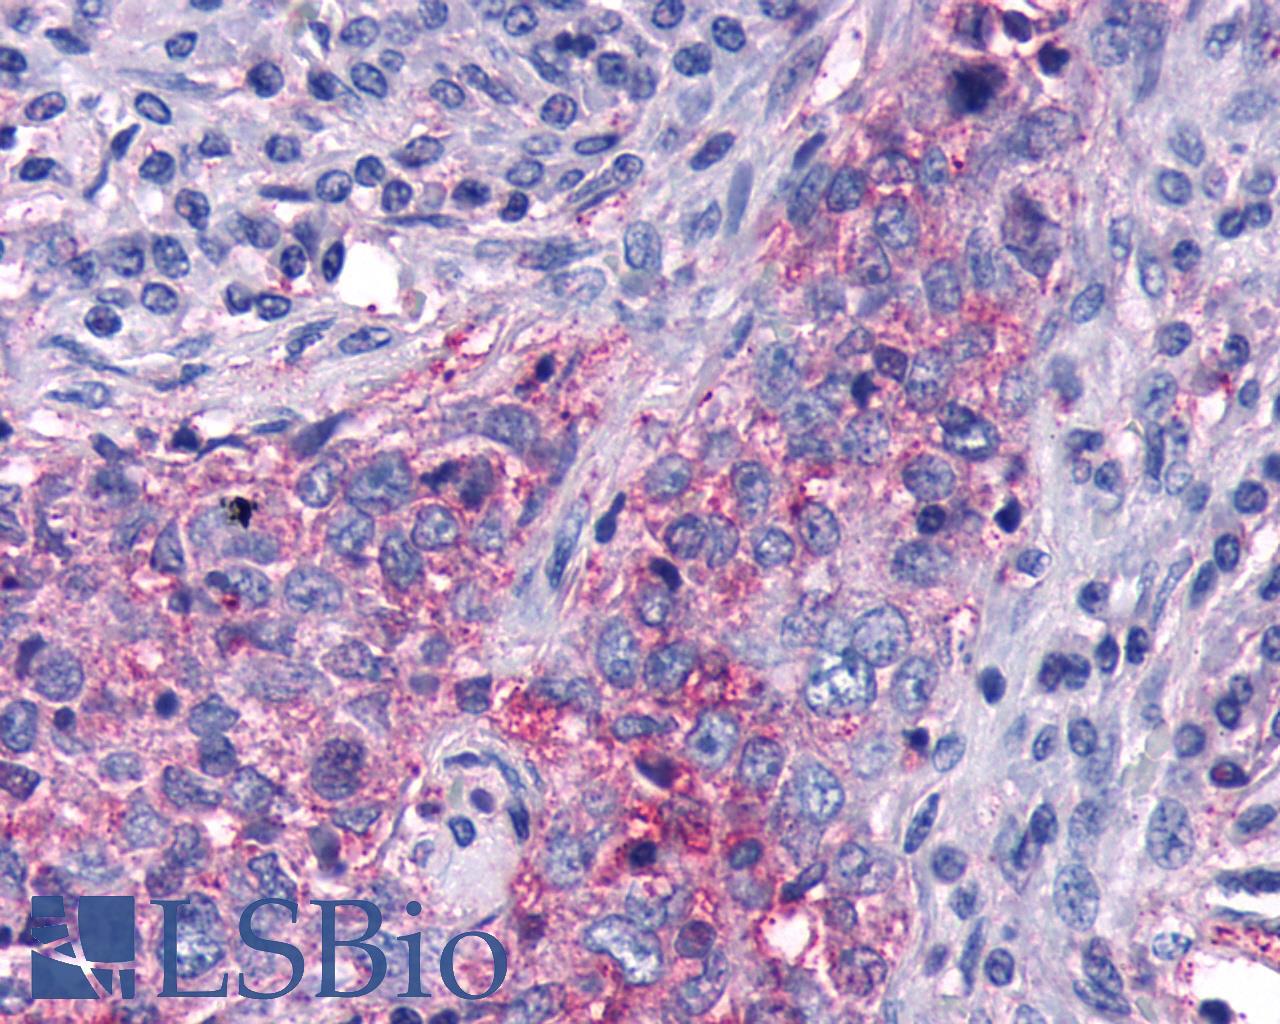 FZD5 / Frizzled 5 Antibody - Breast, Carcinoma